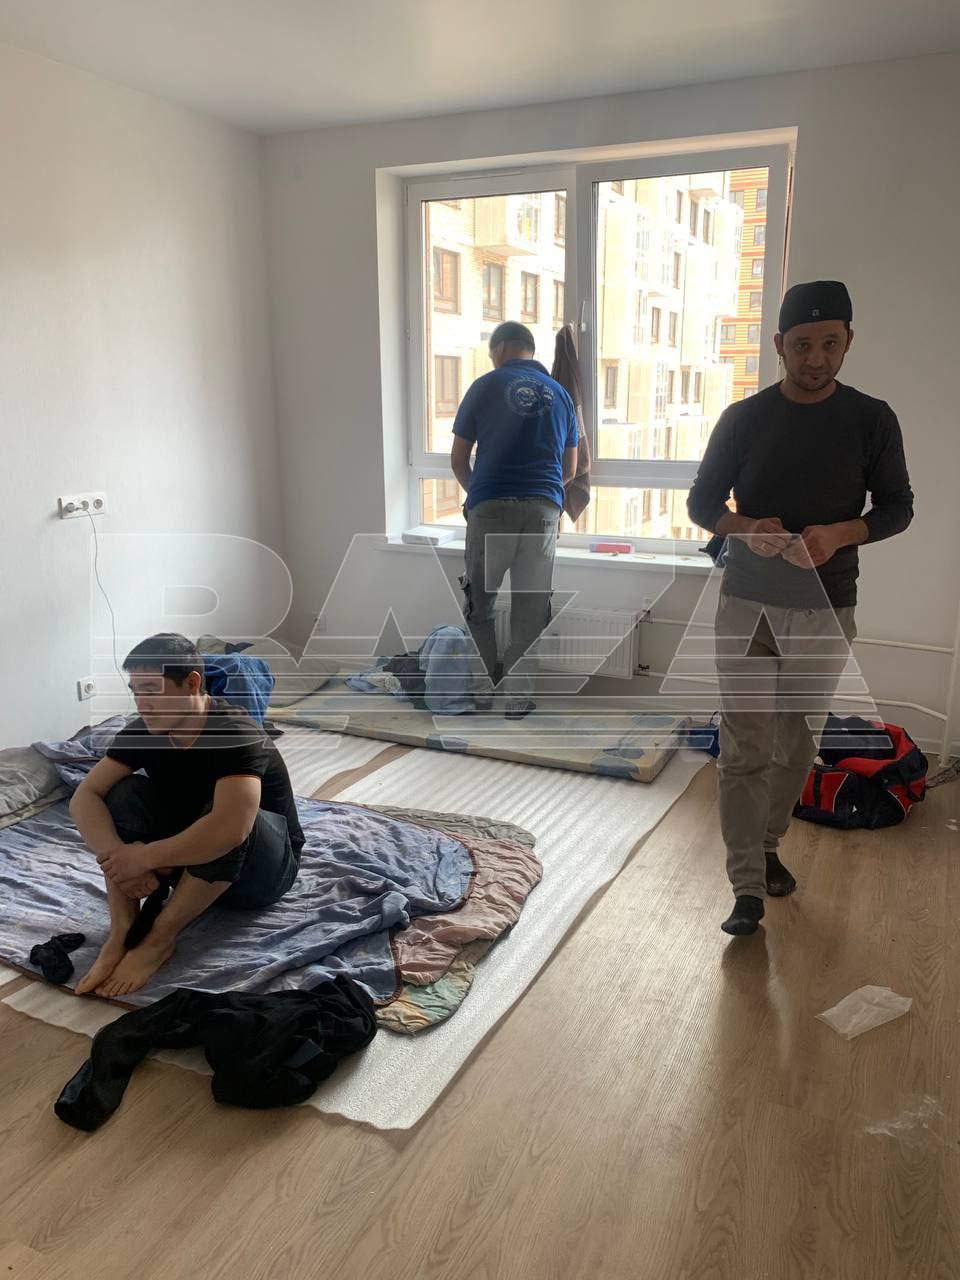 Мигранты-рабочие, занятые на стройке ЖК «Алхимово», живут в чужих квартирах